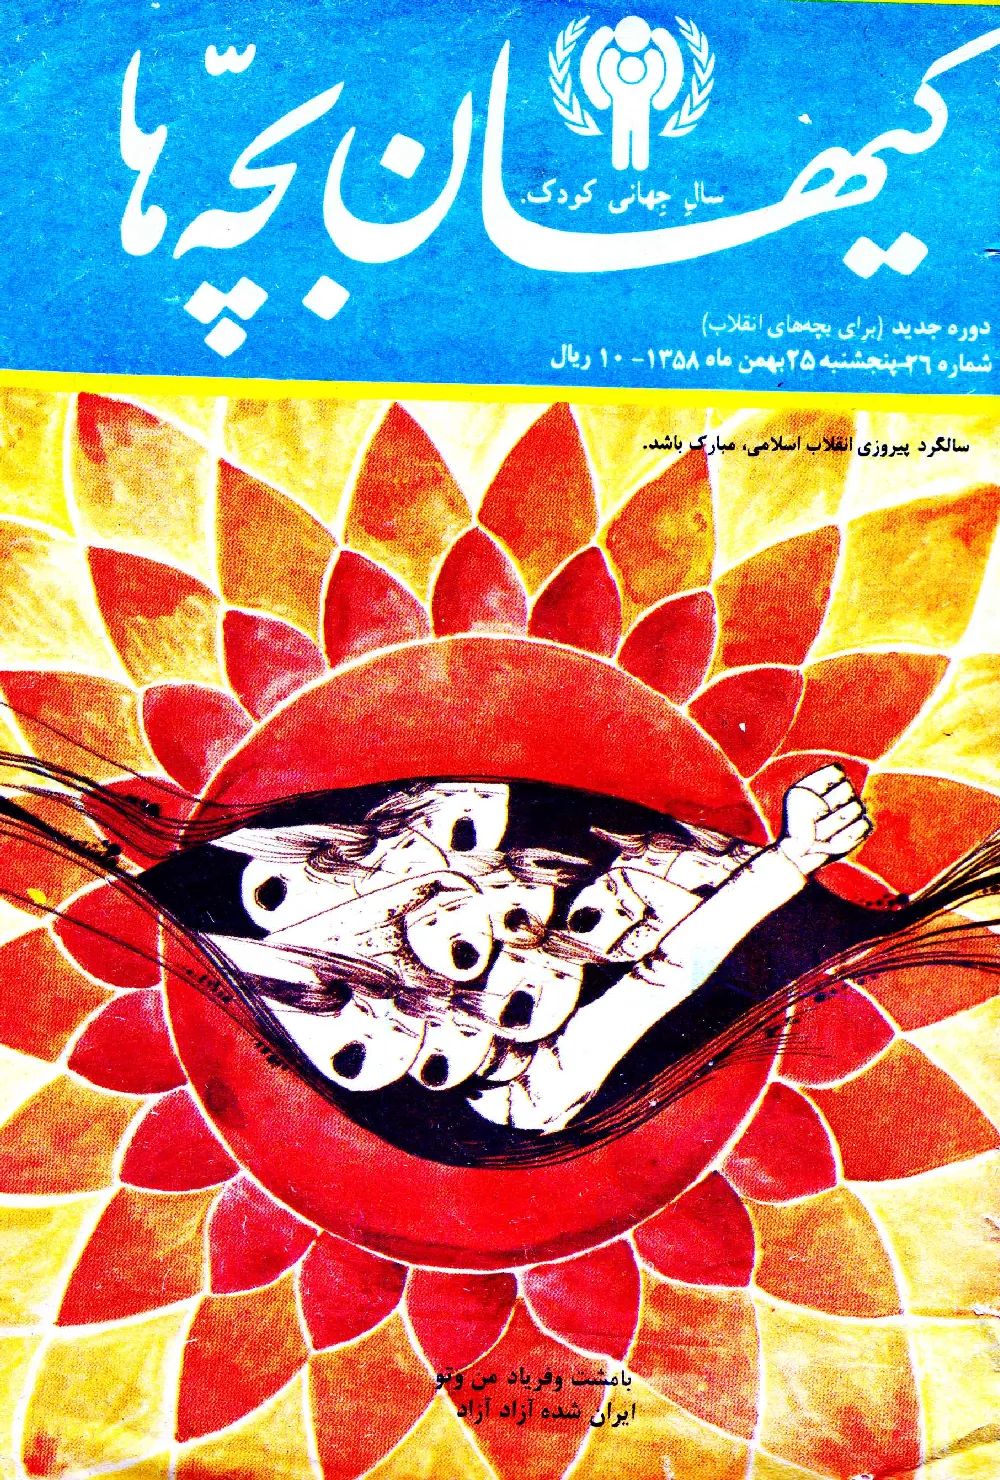 کیهان بچه ها - دوره جدید برای بچه های انقلاب - شماره 26 - بهمن 1358